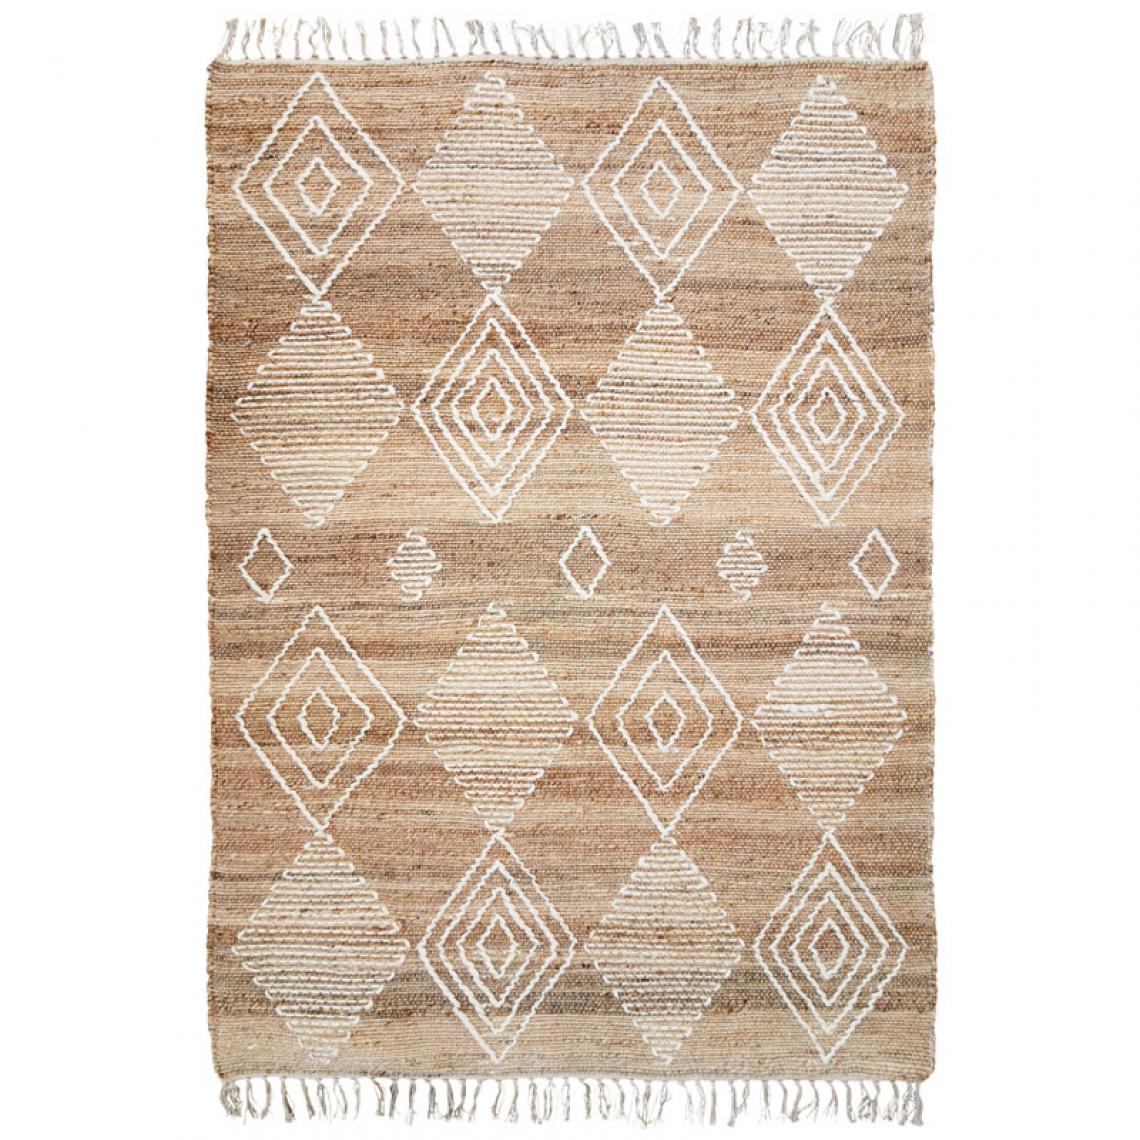 Thedecofactory - PRIMI COLLECTION LOSANGES - Tapis en chanvre avec motifs losanges en laine épaisse naturel 120x170 - Tapis